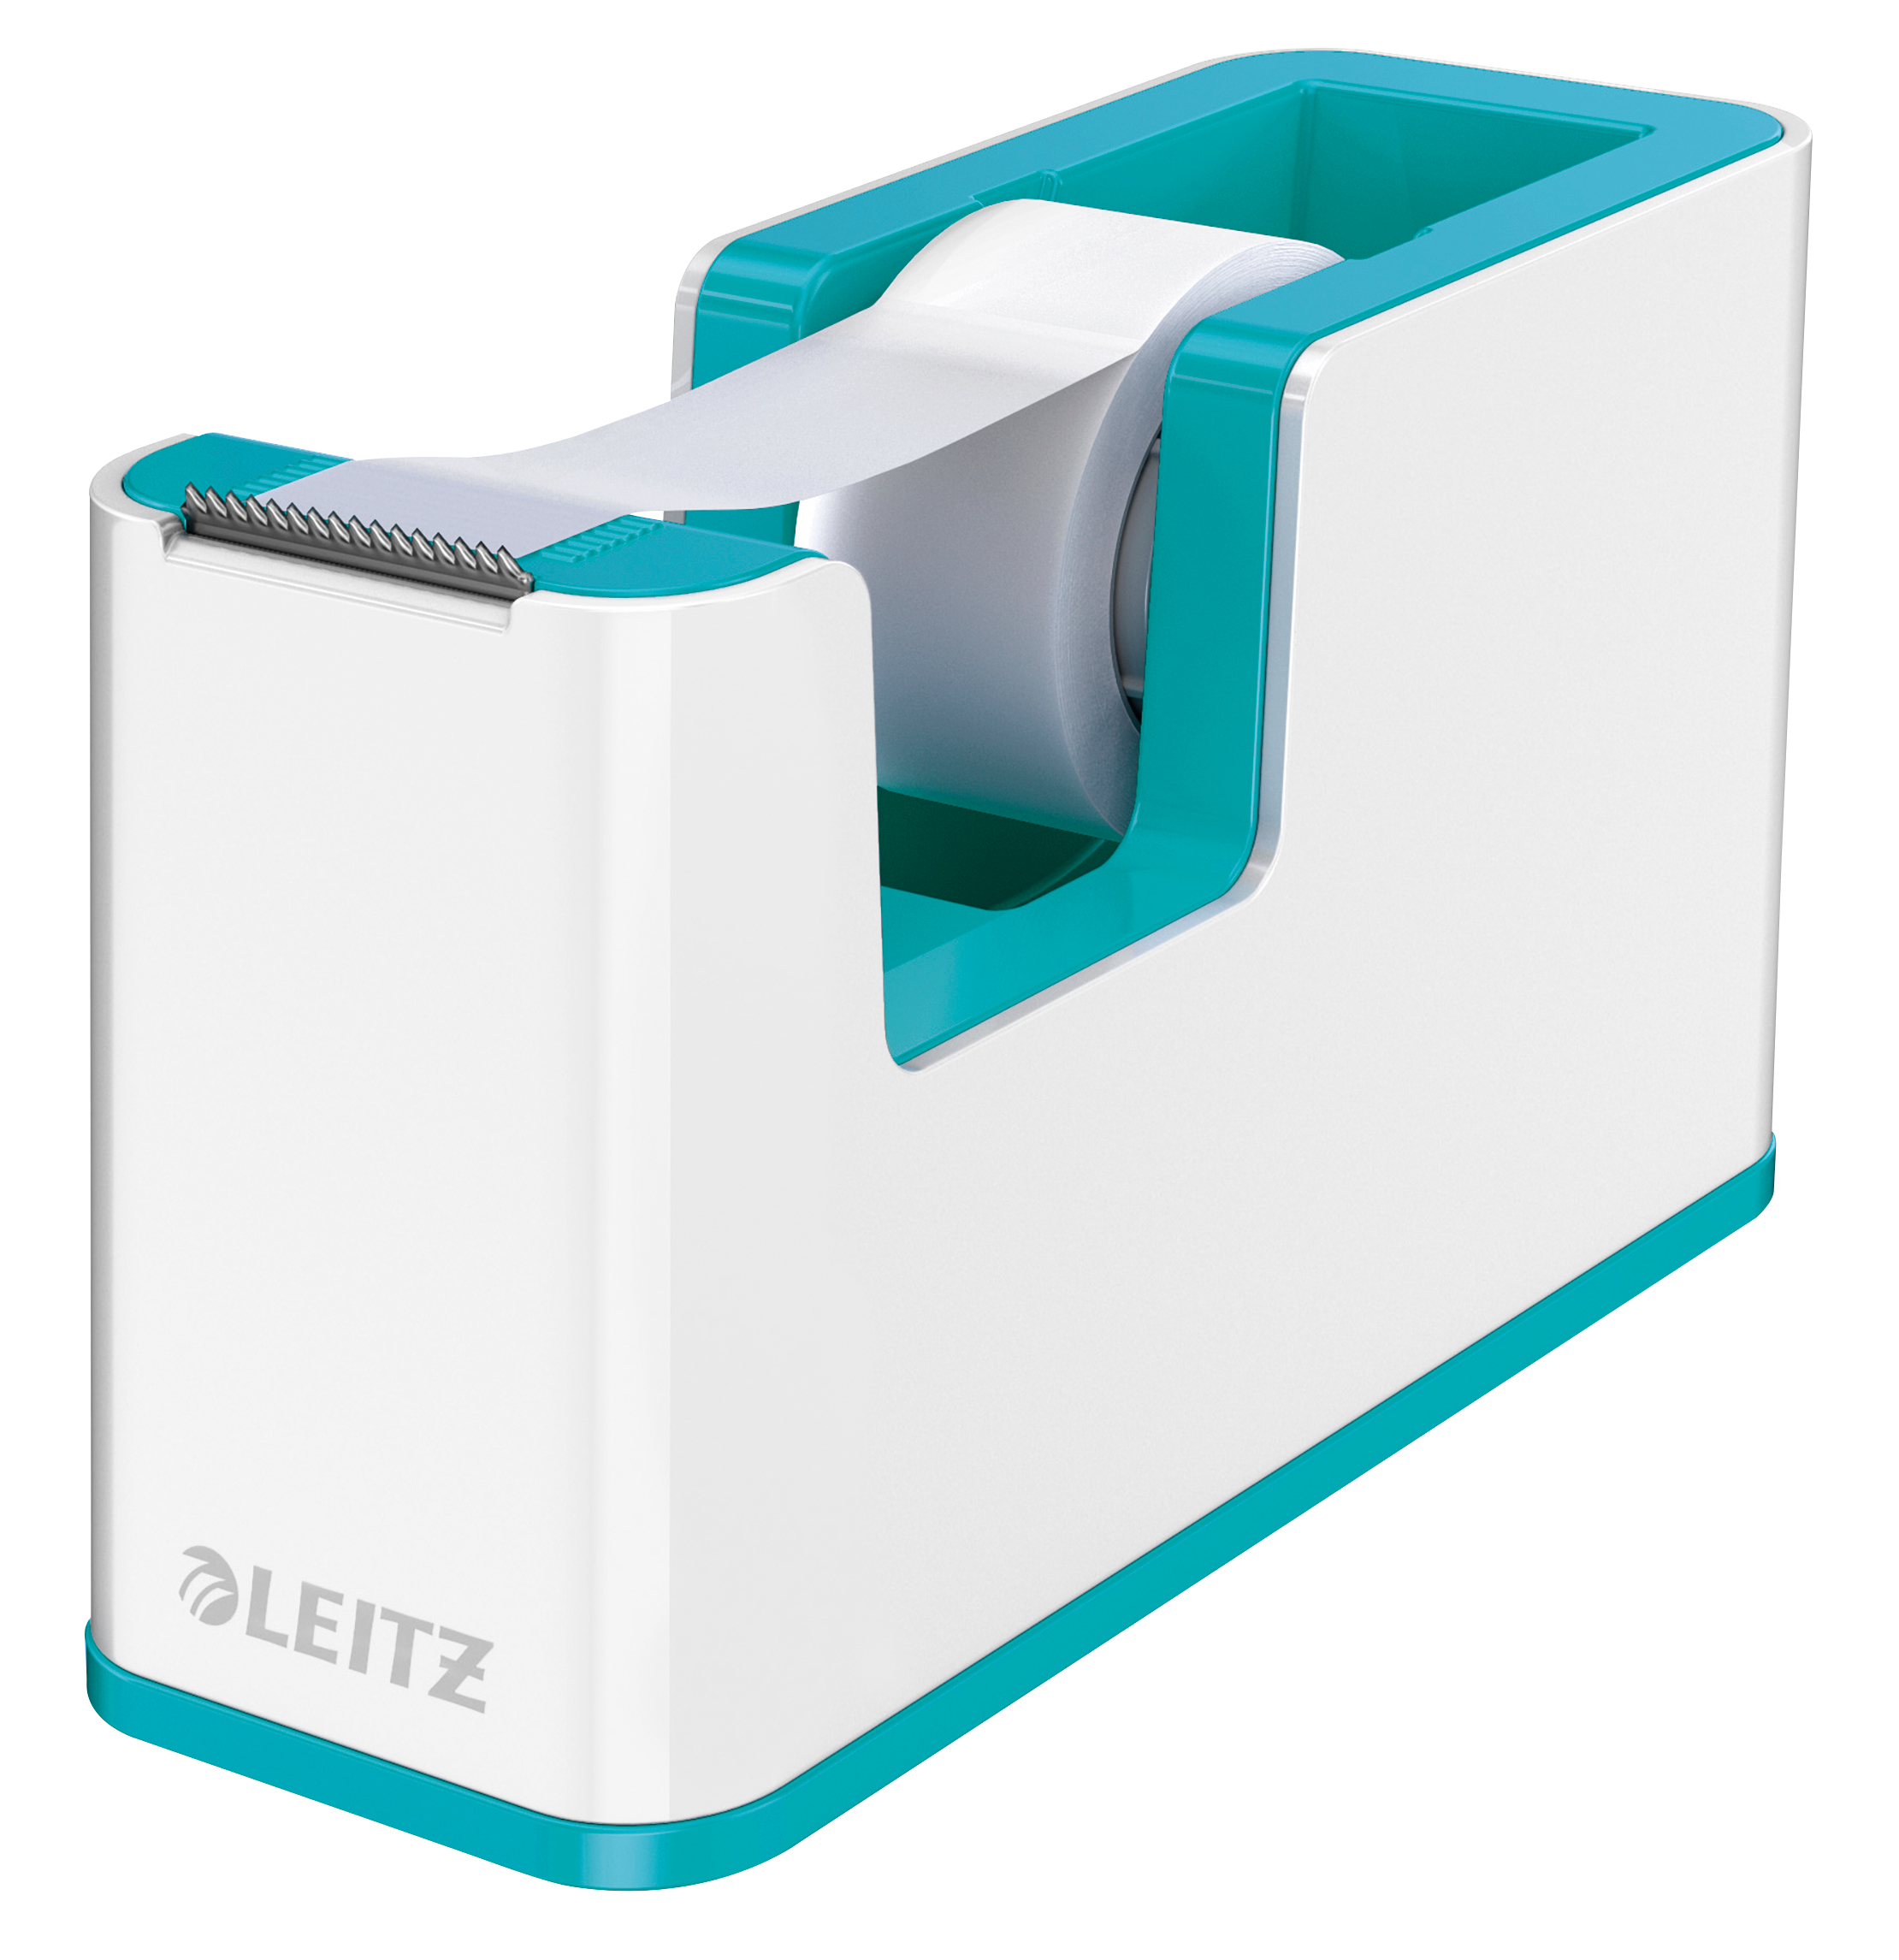 LEITZ Tape Dispenser WOW 19mmx33m 5364-10-51 blanc/bleu blanc/bleu